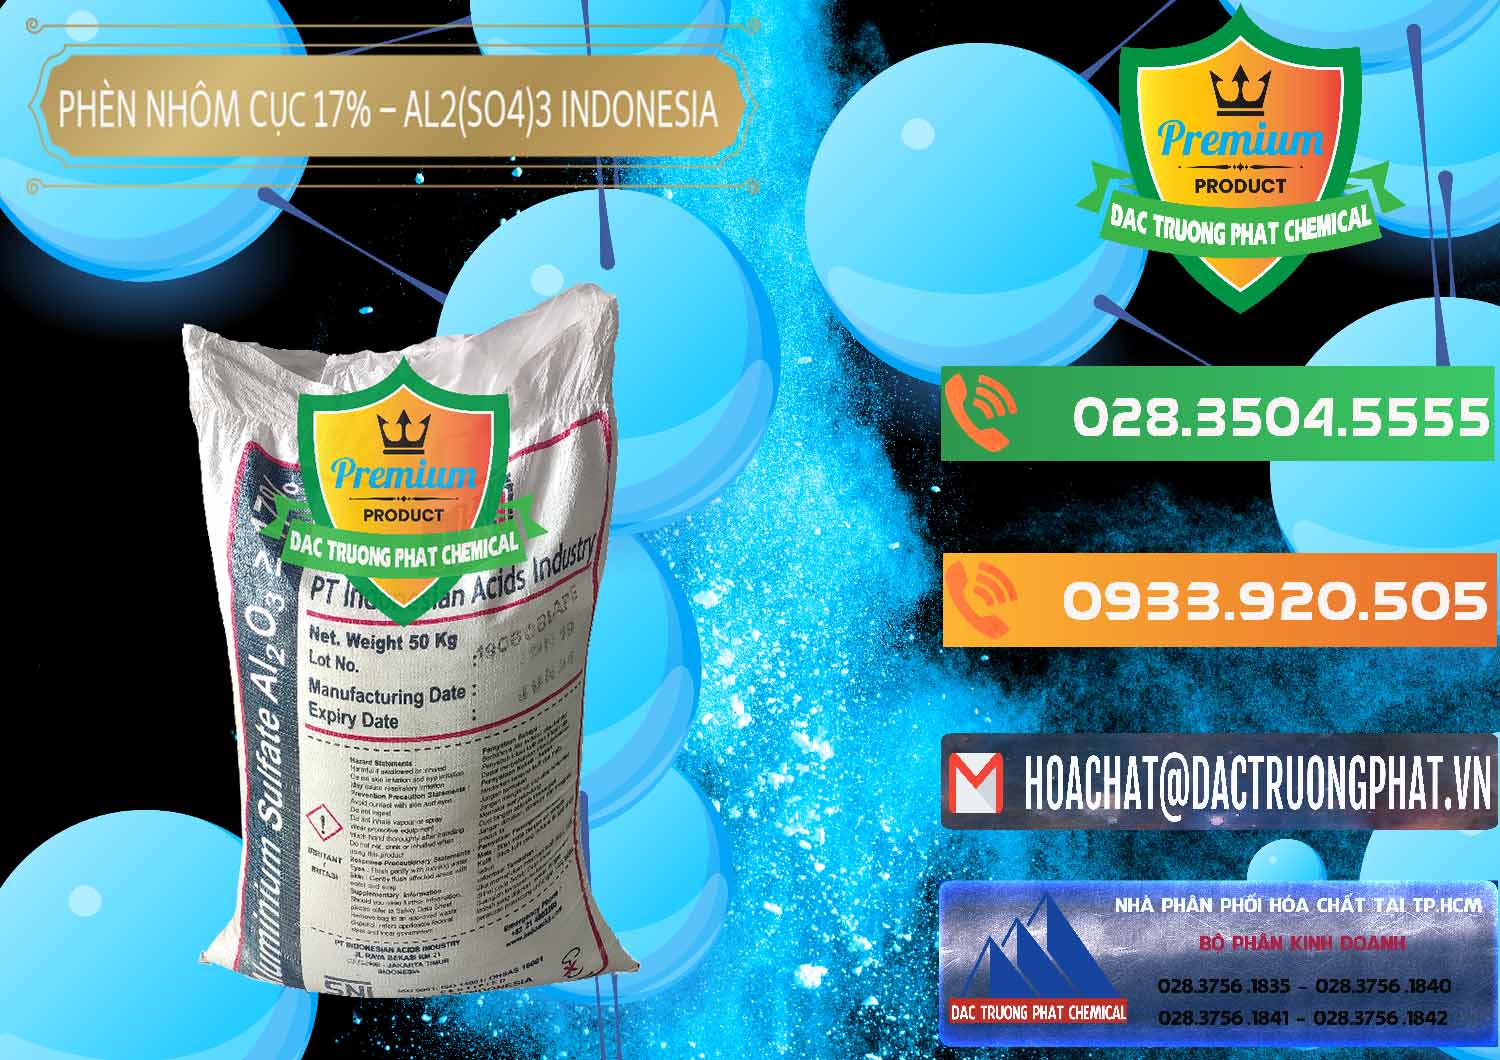 Cty chuyên bán & phân phối Phèn Nhôm Cục - Al2(SO4)3 17% bao 50kg Indonesia - 0113 - Công ty bán & cung cấp hóa chất tại TP.HCM - hoachatxulynuoc.com.vn